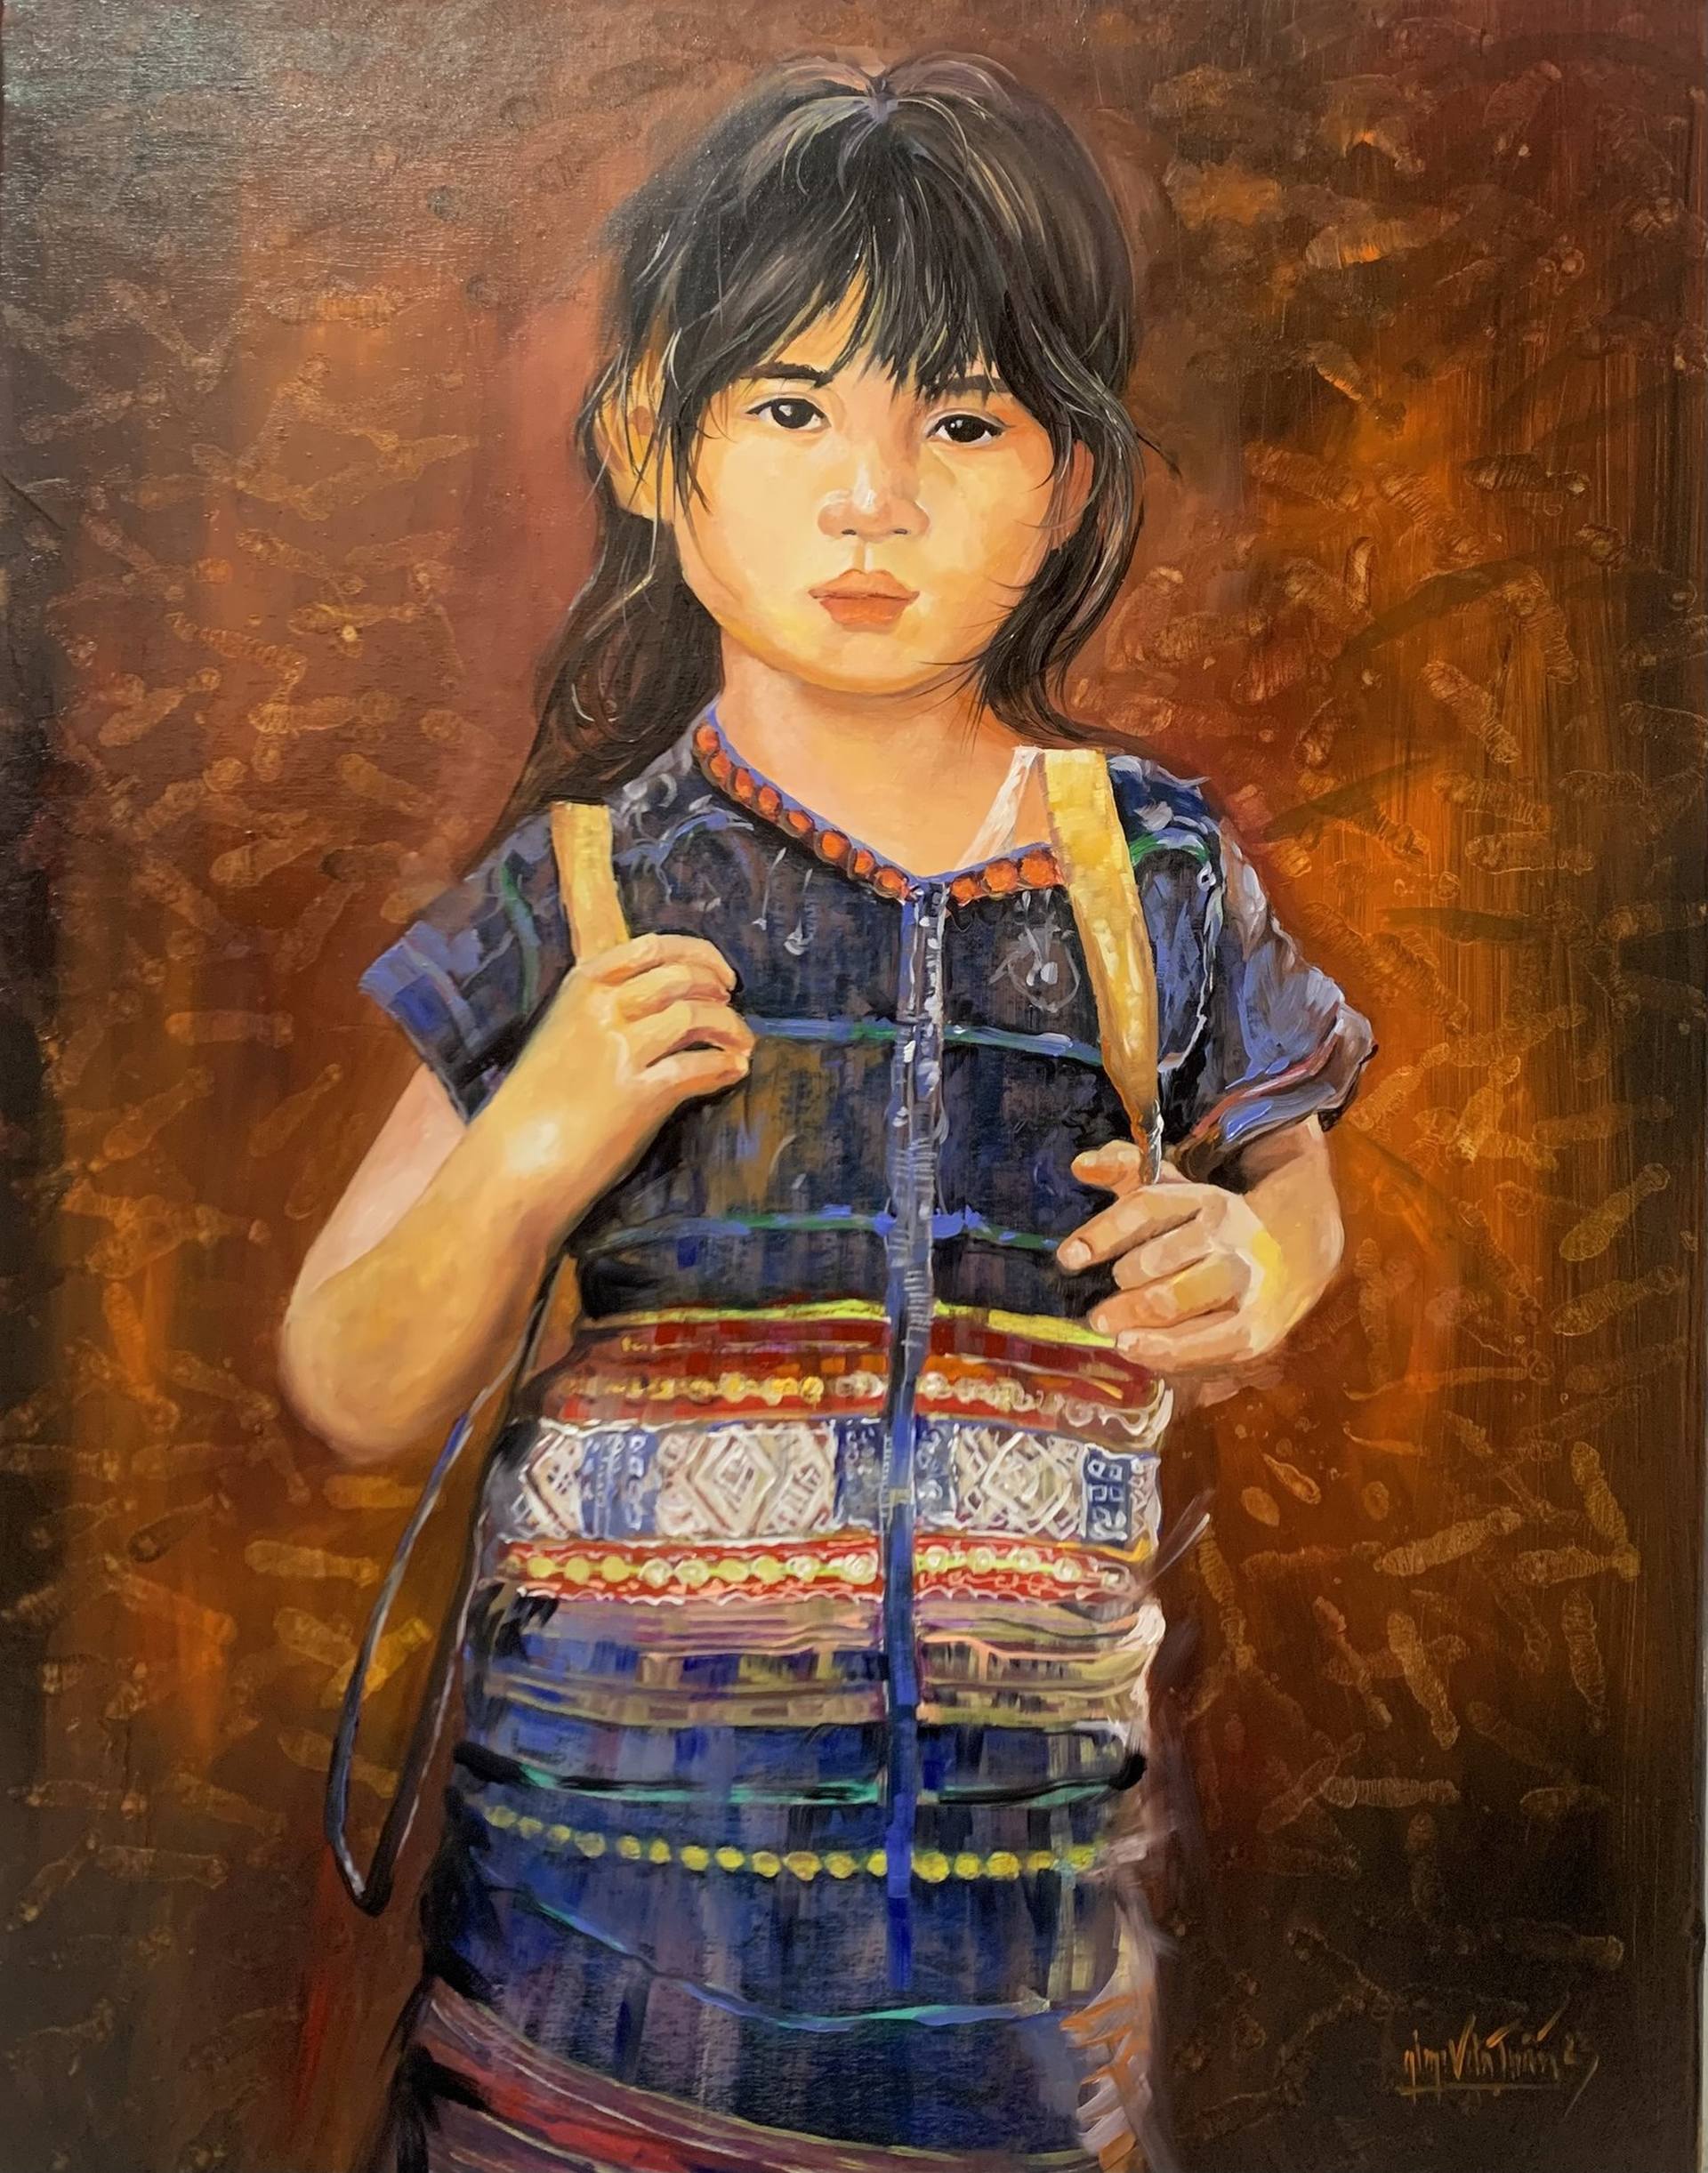 Bạn có biết về Giap Van Tuan - một họa sĩ tài ba ở Việt Nam? Những bức tranh của ông mang lại cảm hứng vô hạn cho những người yêu nghệ thuật. Hãy khám phá những tác phẩm đầy màu sắc và độc đáo của ông để trải nghiệm độc nhất vô nhị!